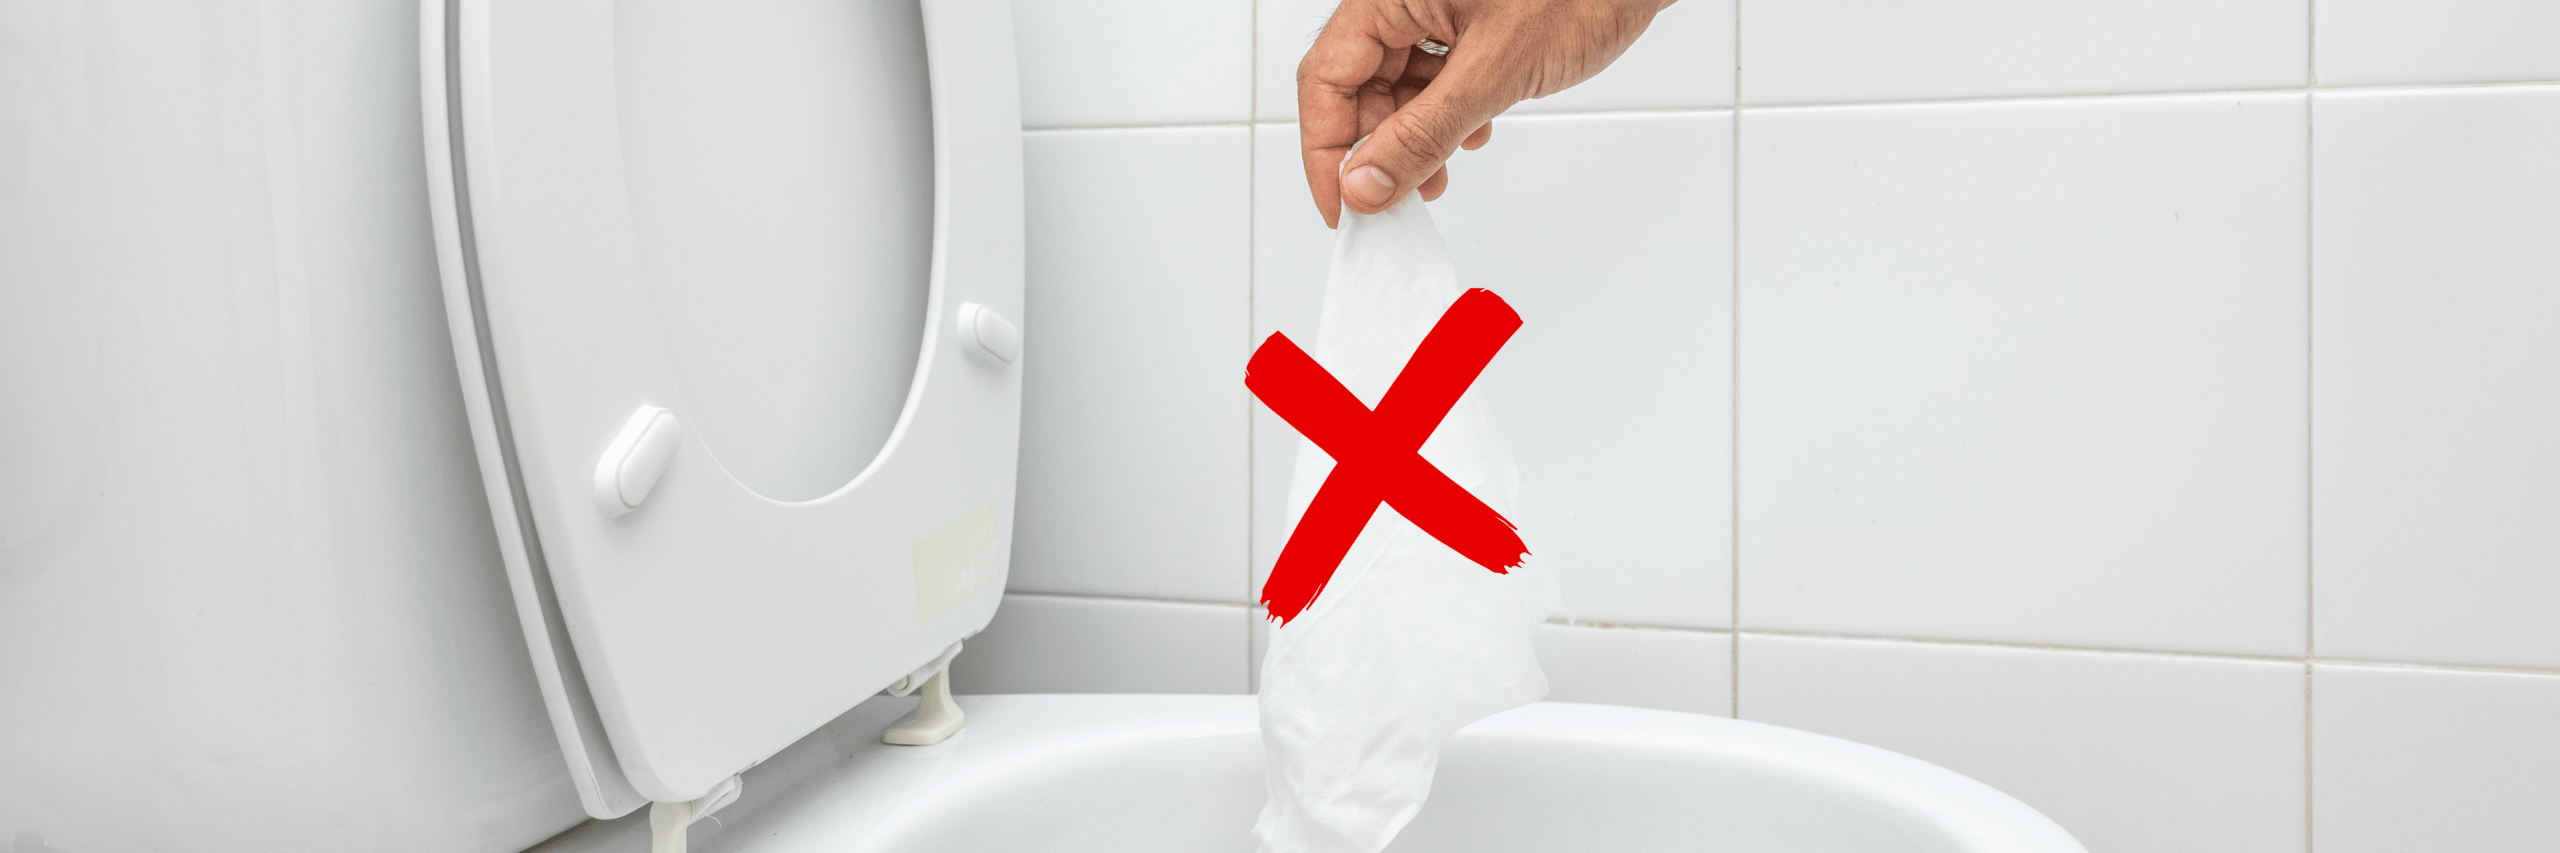 Do not flush wet wipes down toilet